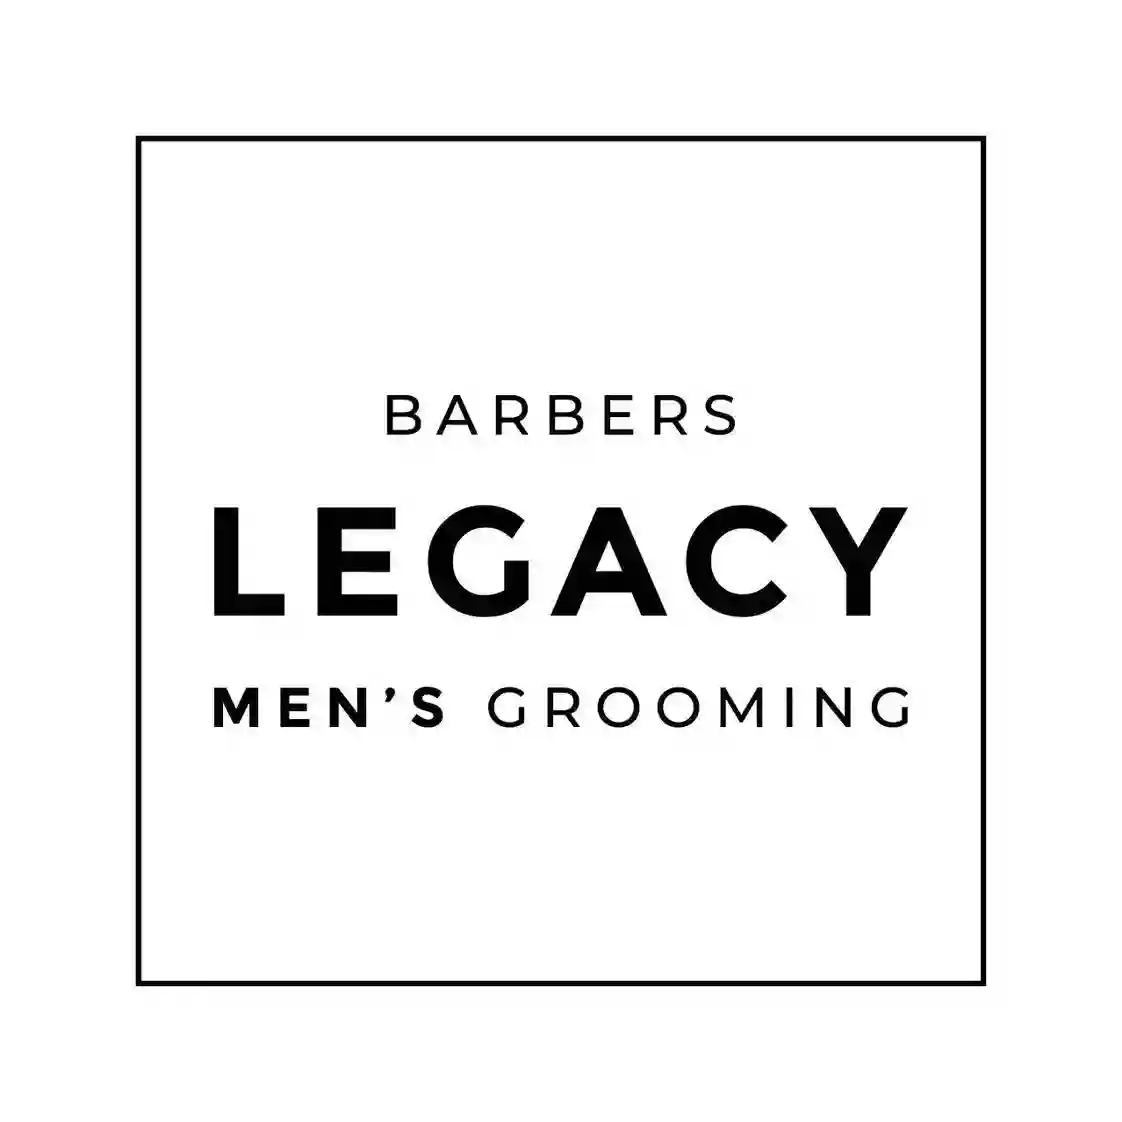 Barbers legacy Men’s Grooming